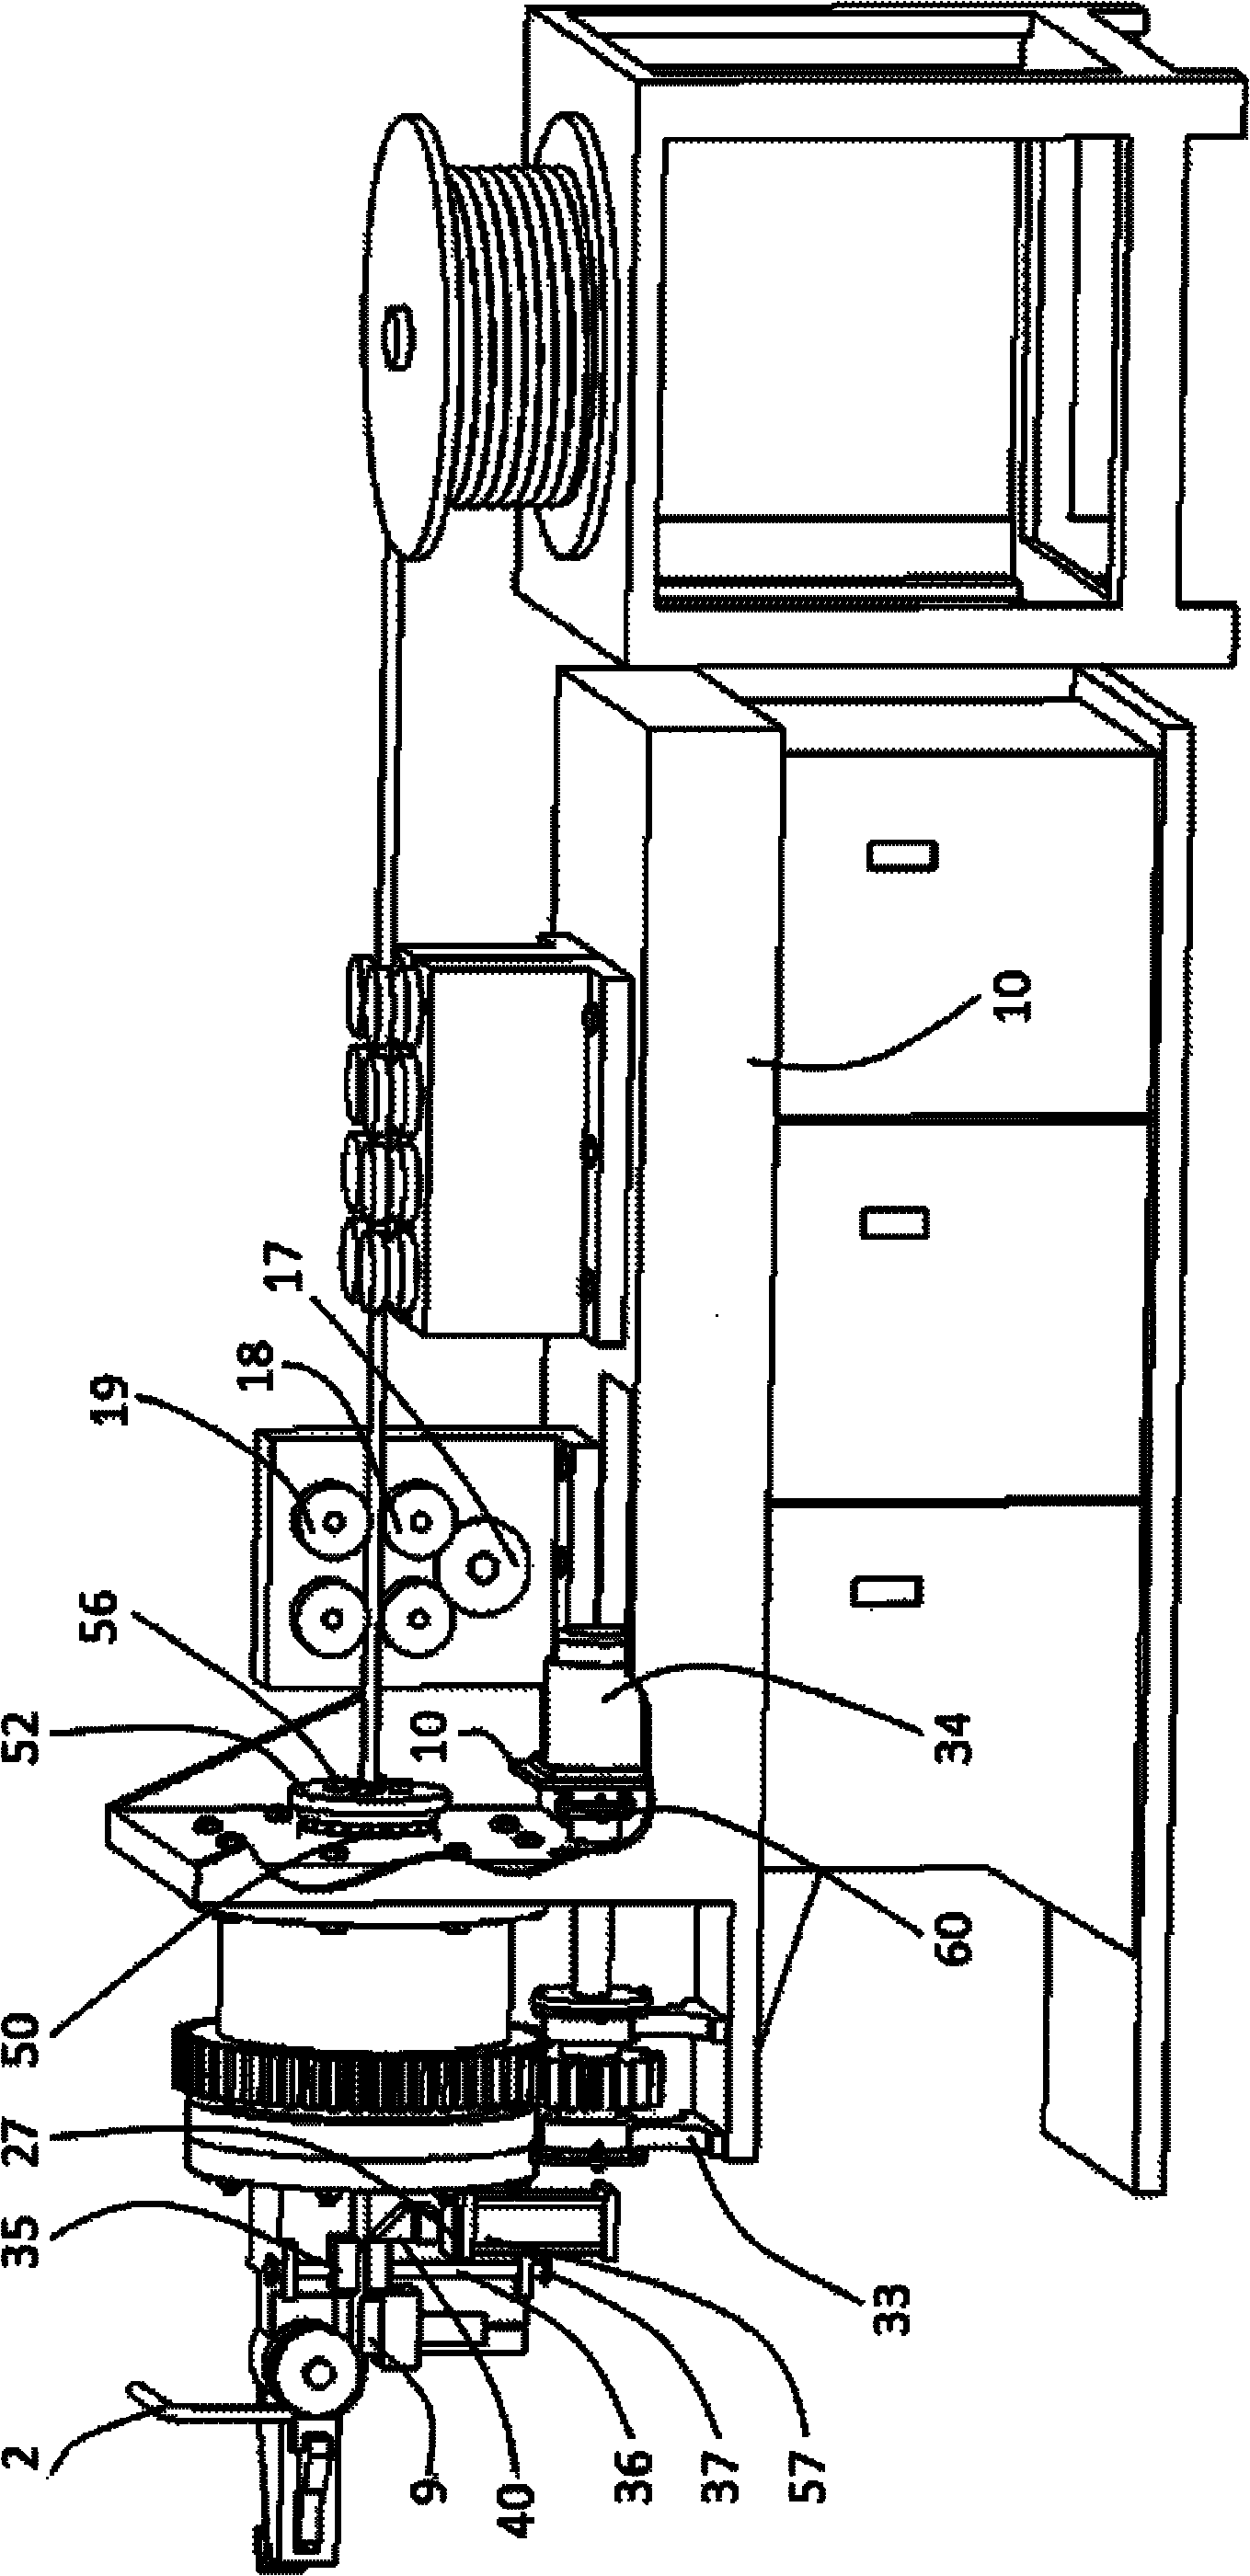 Rotary machine head type wire bending equipment